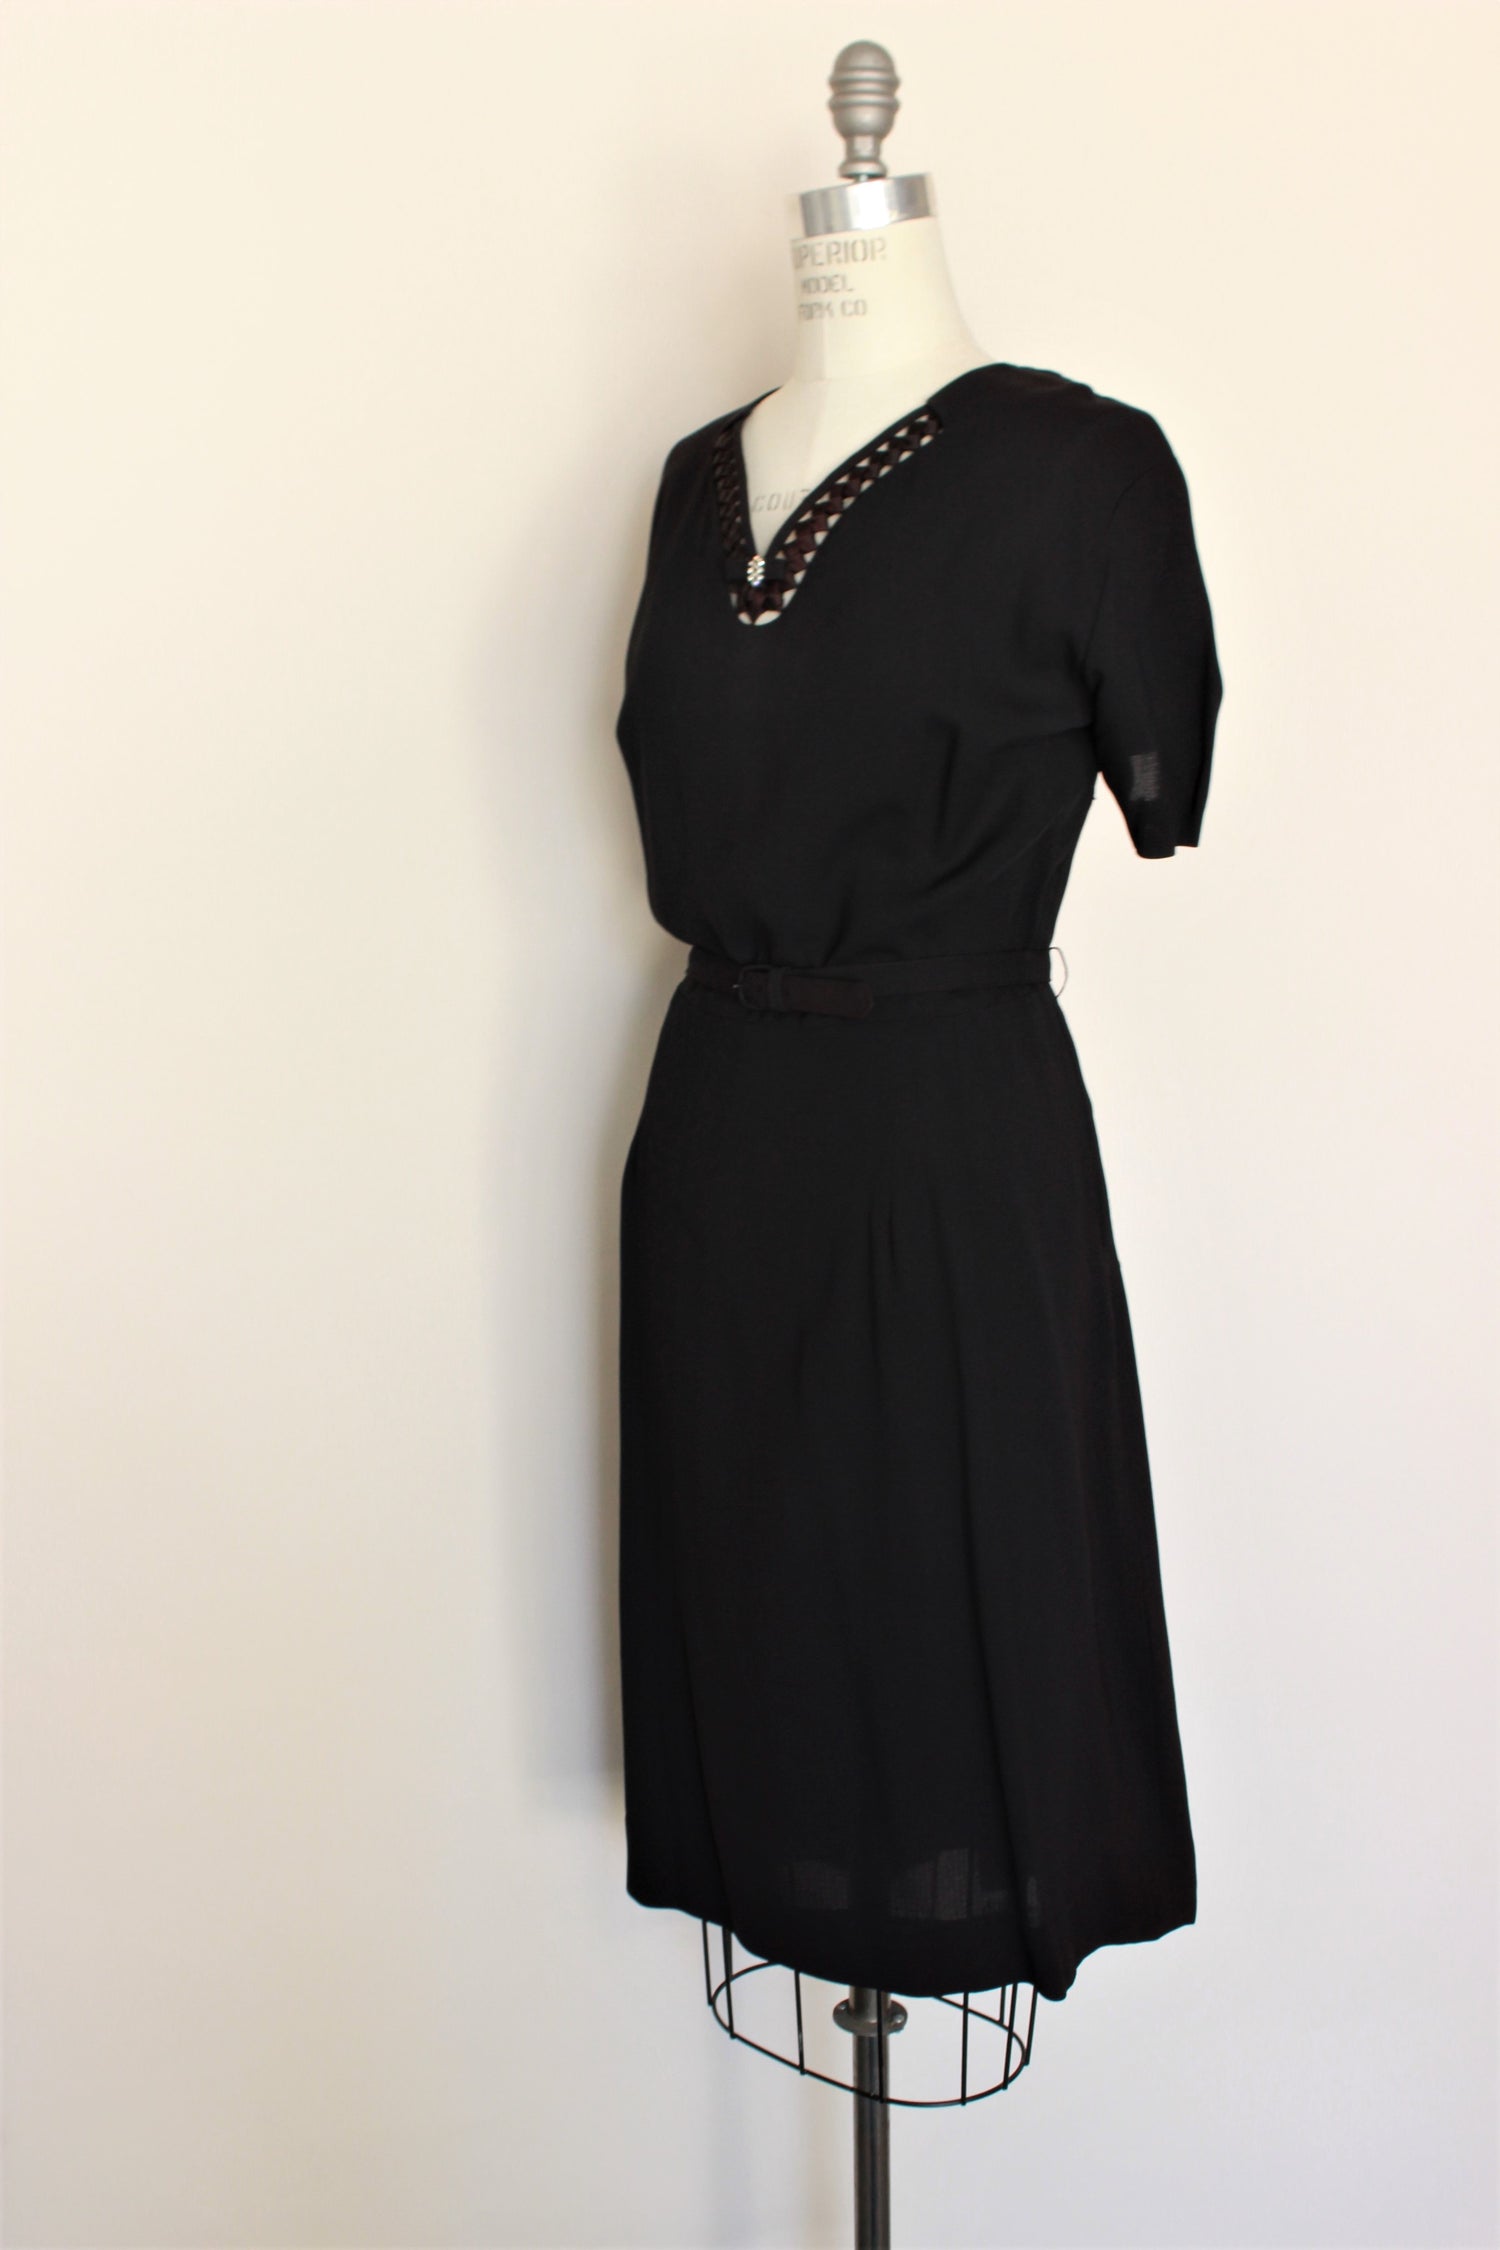 Vintage 1940s 1950s Black Dress With Belt and Jacket